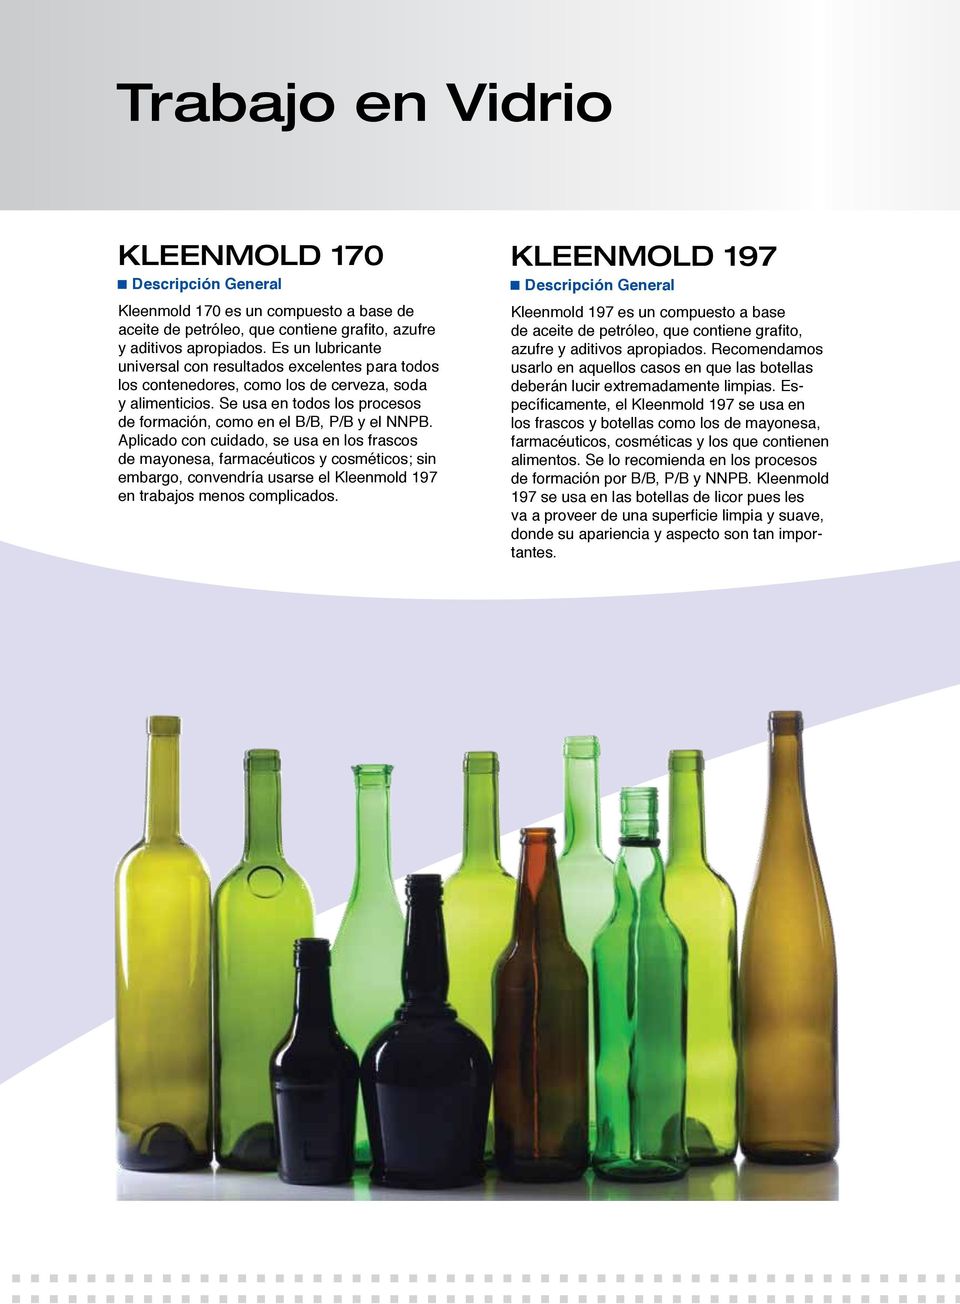 Aplicado con cuidado, se usa en los frascos de mayonesa, farmacéuticos y cosméticos; sin embargo, convendría usarse el Kleenmold 197 en trabajos menos complicados.